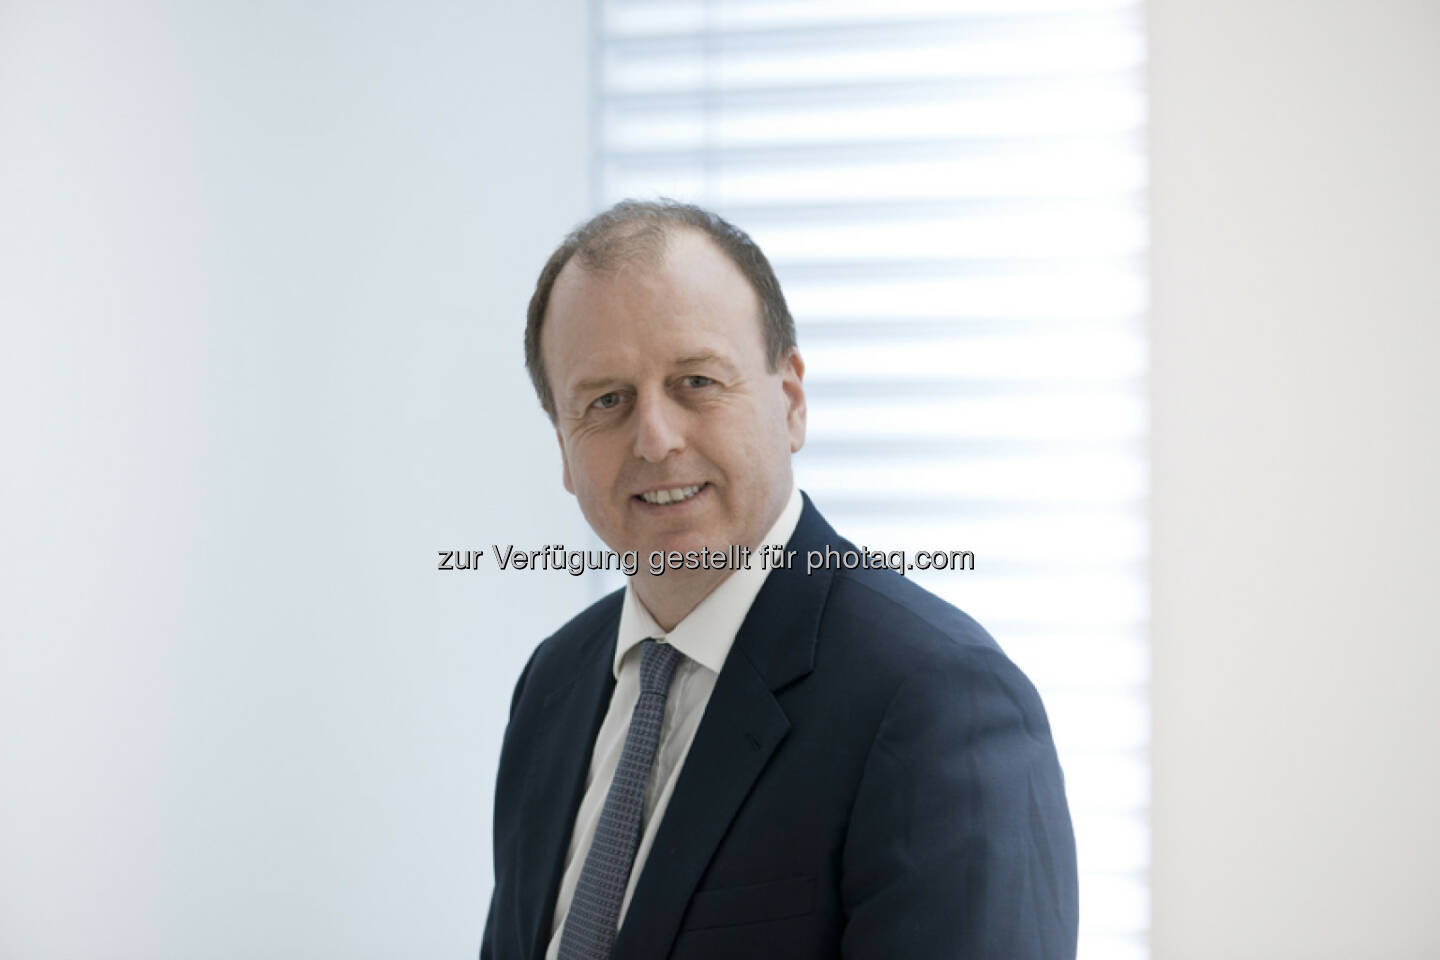 Der Aufsichtsrat der Zumtobel AG hat dem Wunsch von Martin Brandt, Vorstandsmitglied und Chief Operating Officer der Gesellschaft, entsprochen, seinen Vorstandsvertrag, der noch eine Laufzeit bis zum 30. April 2015 hatte, mit Wirkung zum 31. Juli 2014 vorzeitig zu beenden (c) Zumtobel